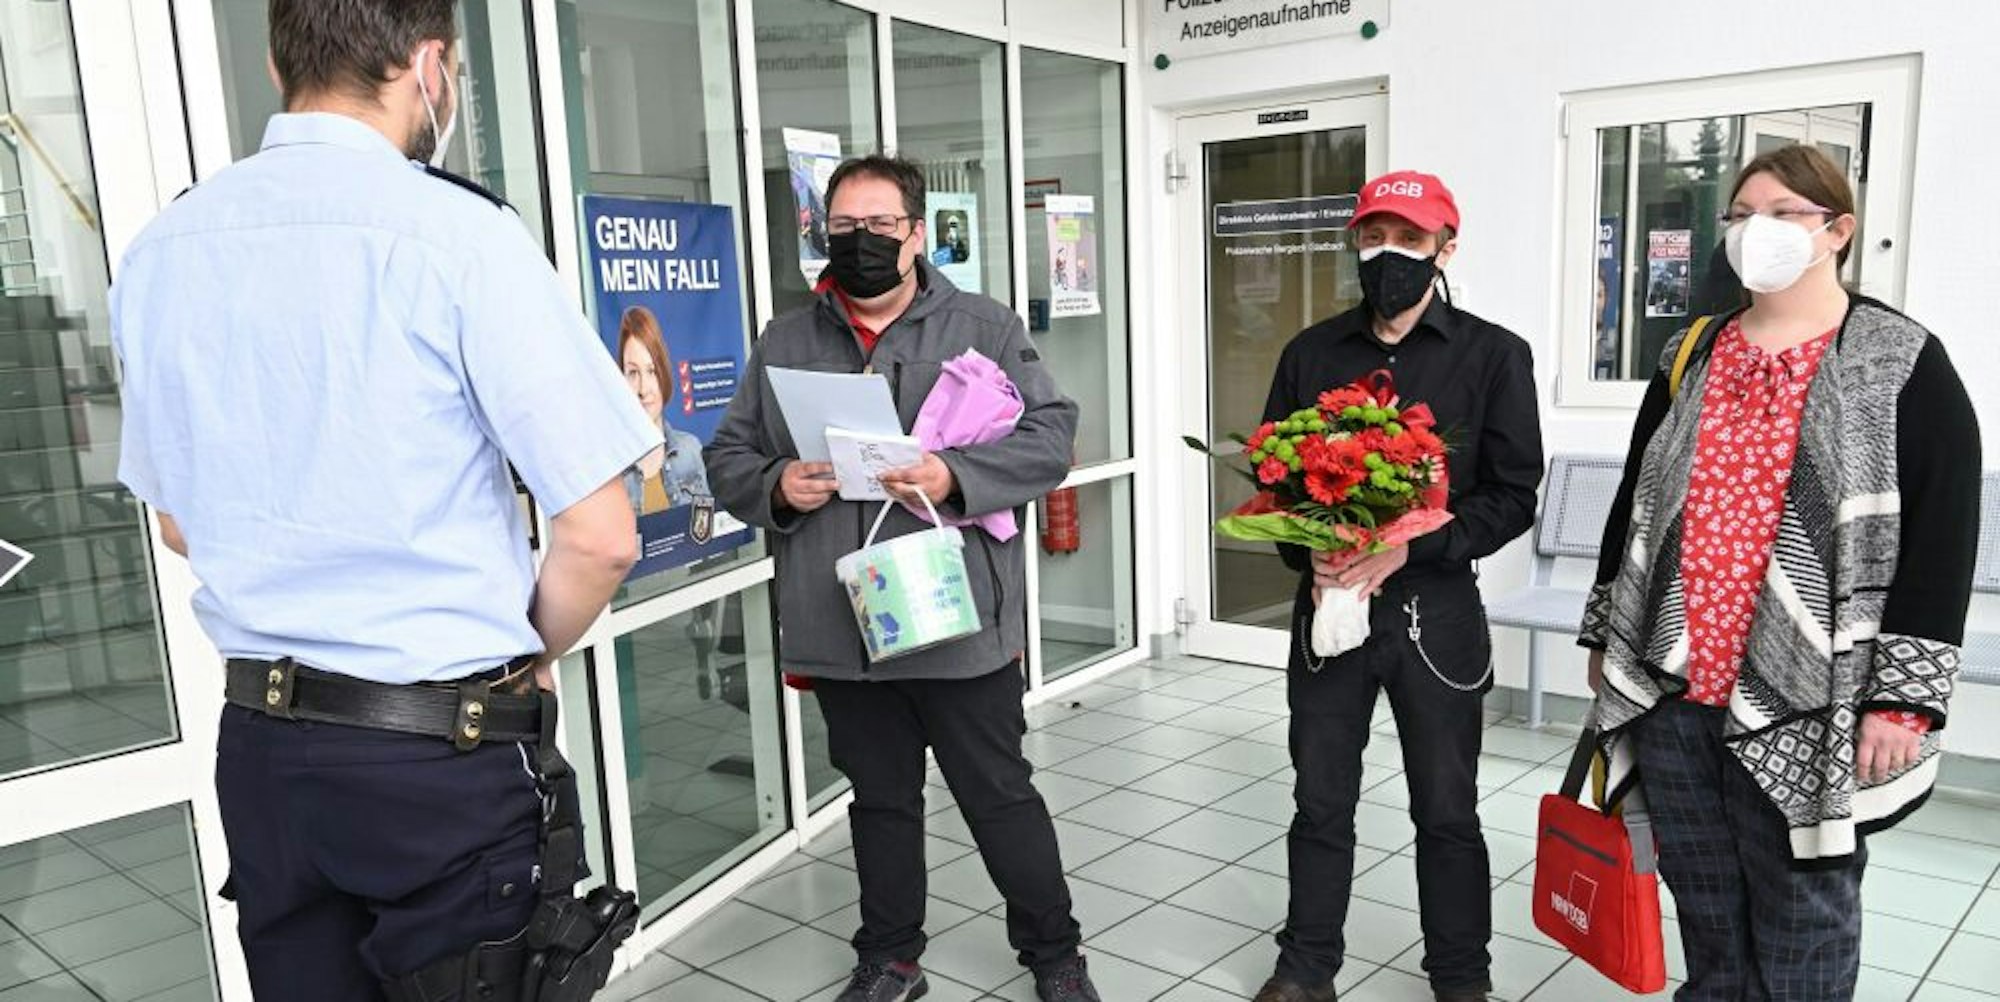 Blumen, Süßes und Anerkennung brachten (v.r.) Maike Eyring, Frank Conrad und Patrick Graf vom DGB zu Gladbachs Polizeiwache.